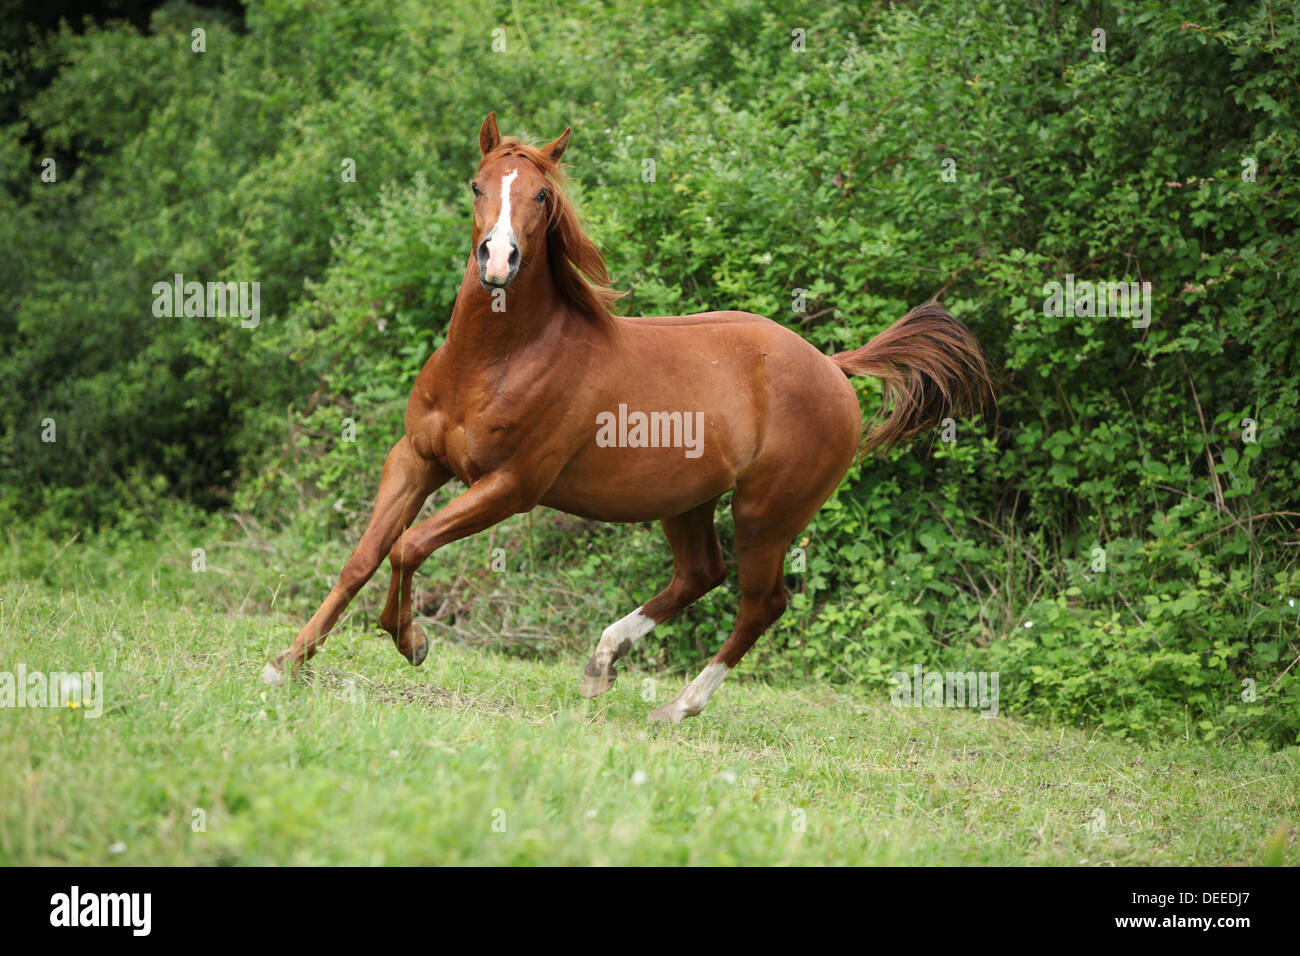 Les jeunes sorrel solid Paint horse courir devant un arrière-plan vert Banque D'Images